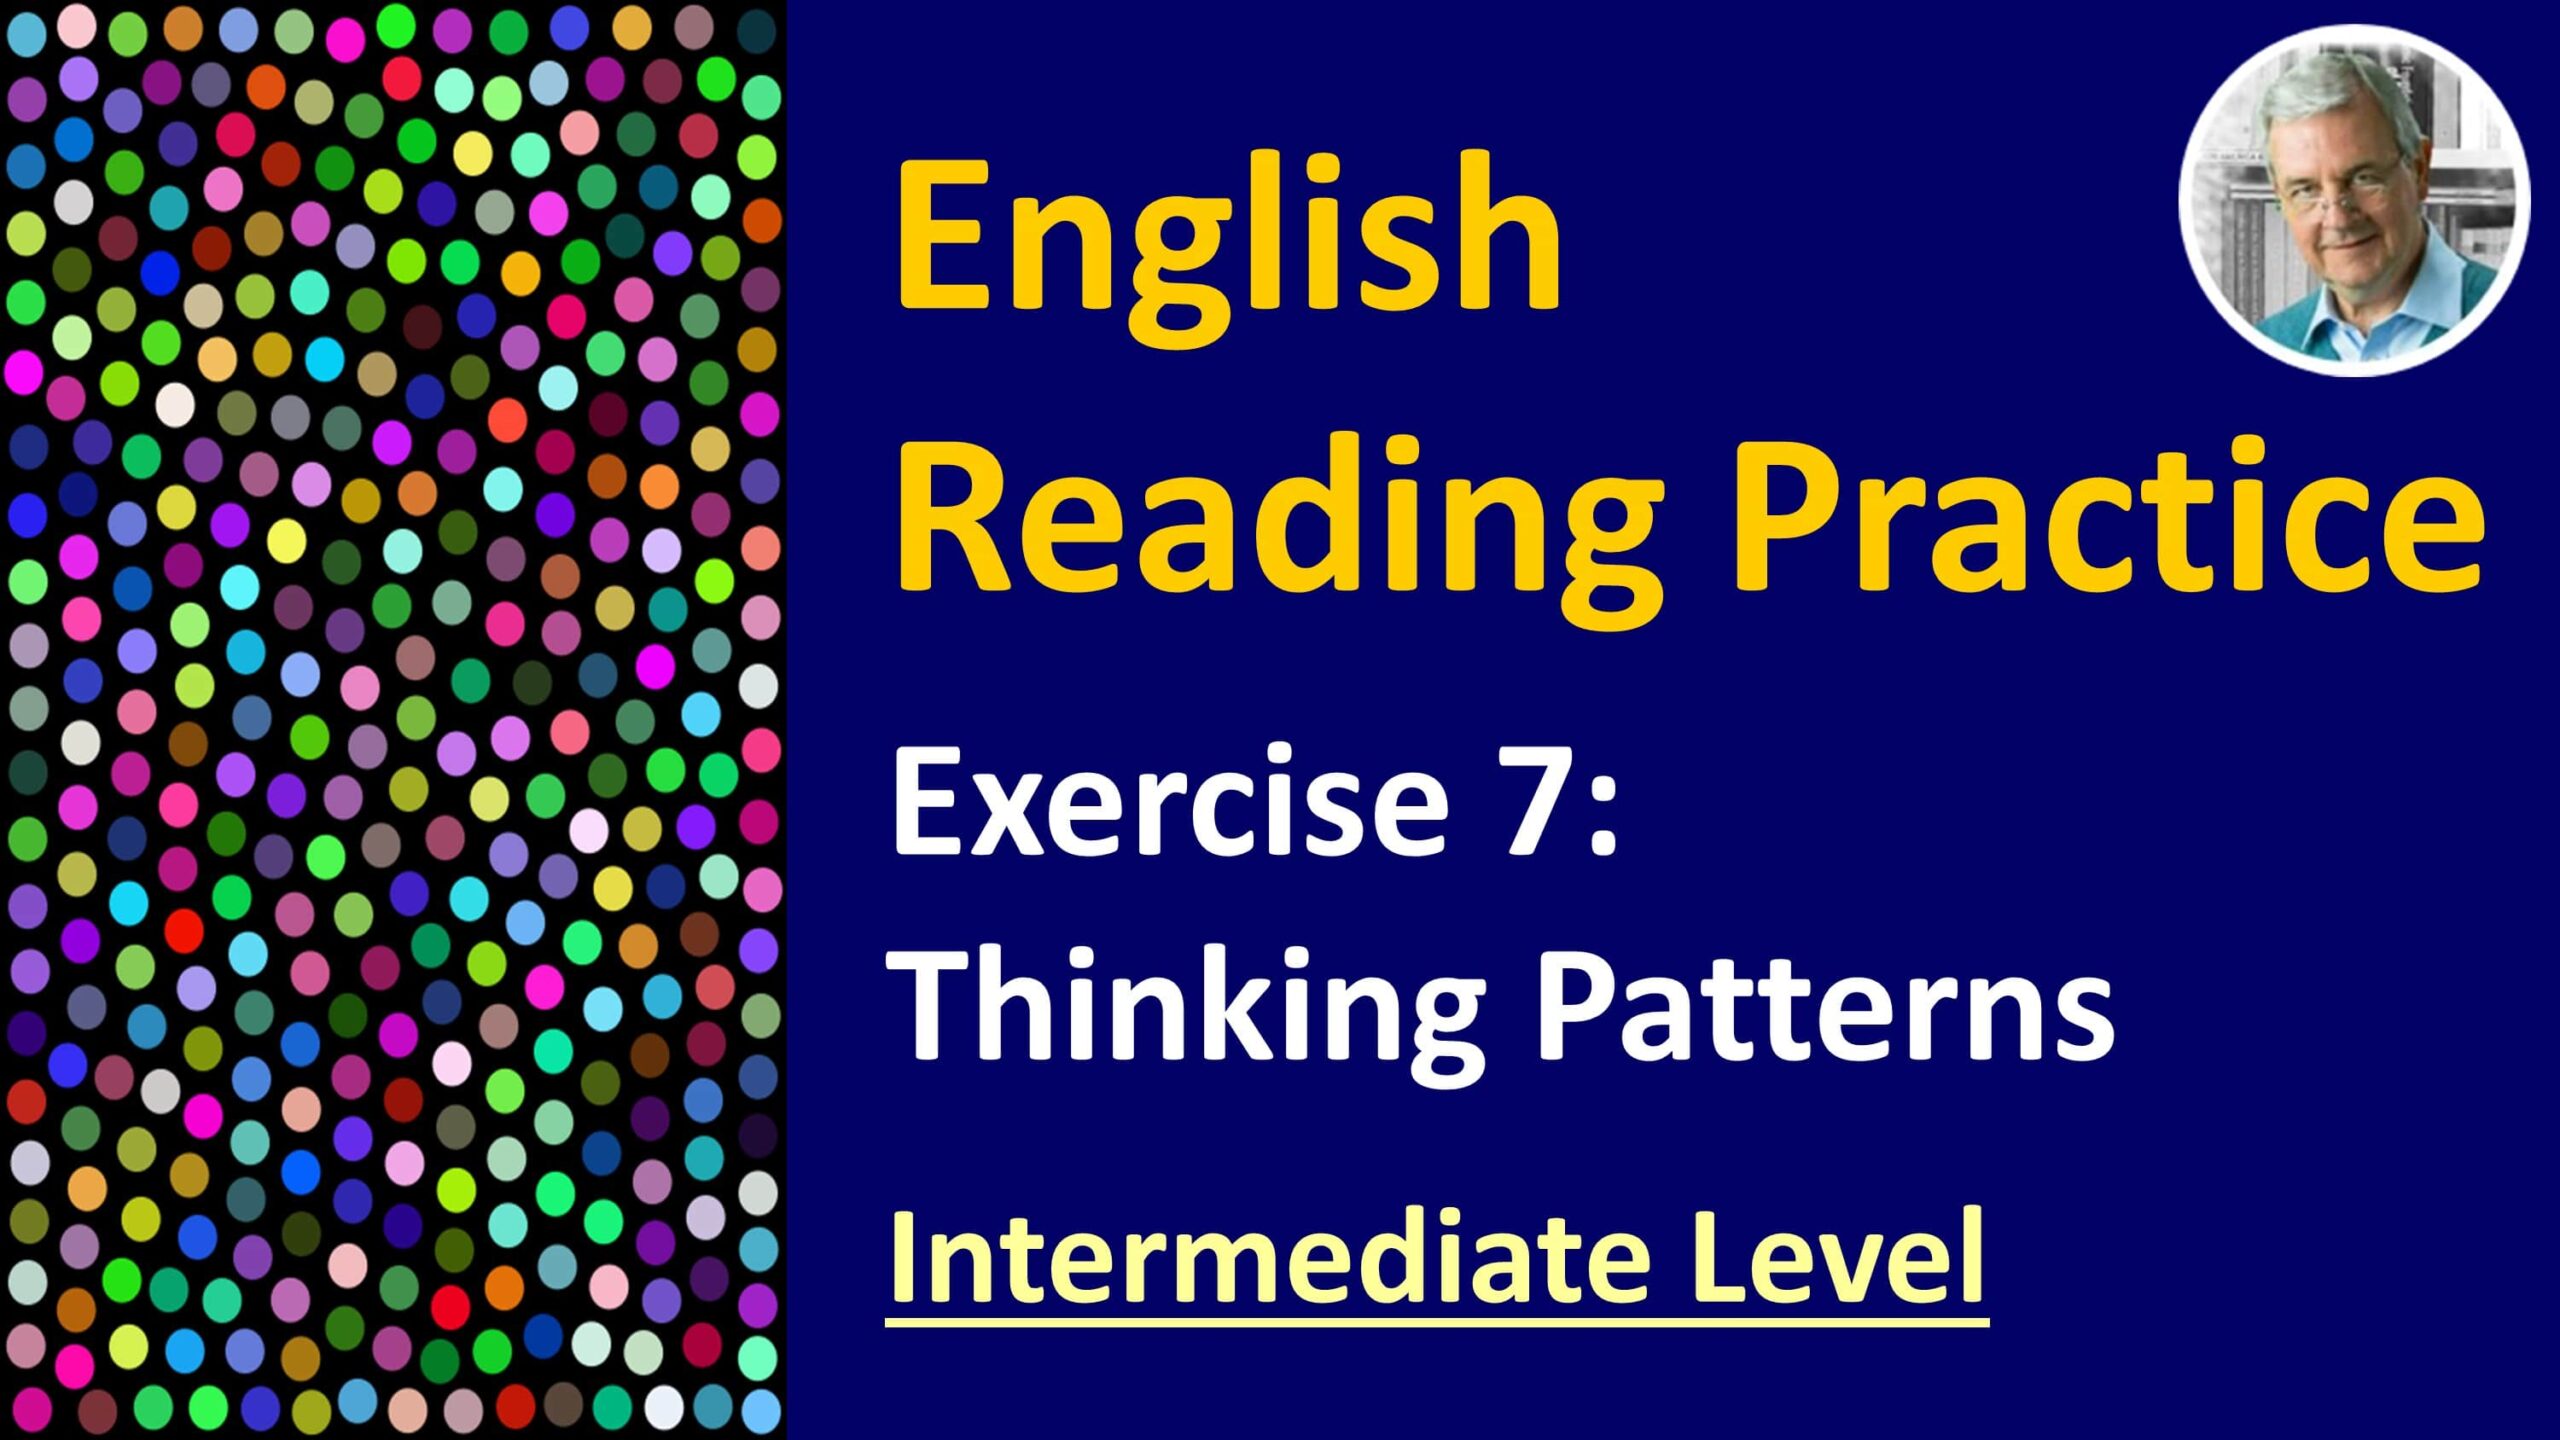 english reading exercise - 7I thinking patterns